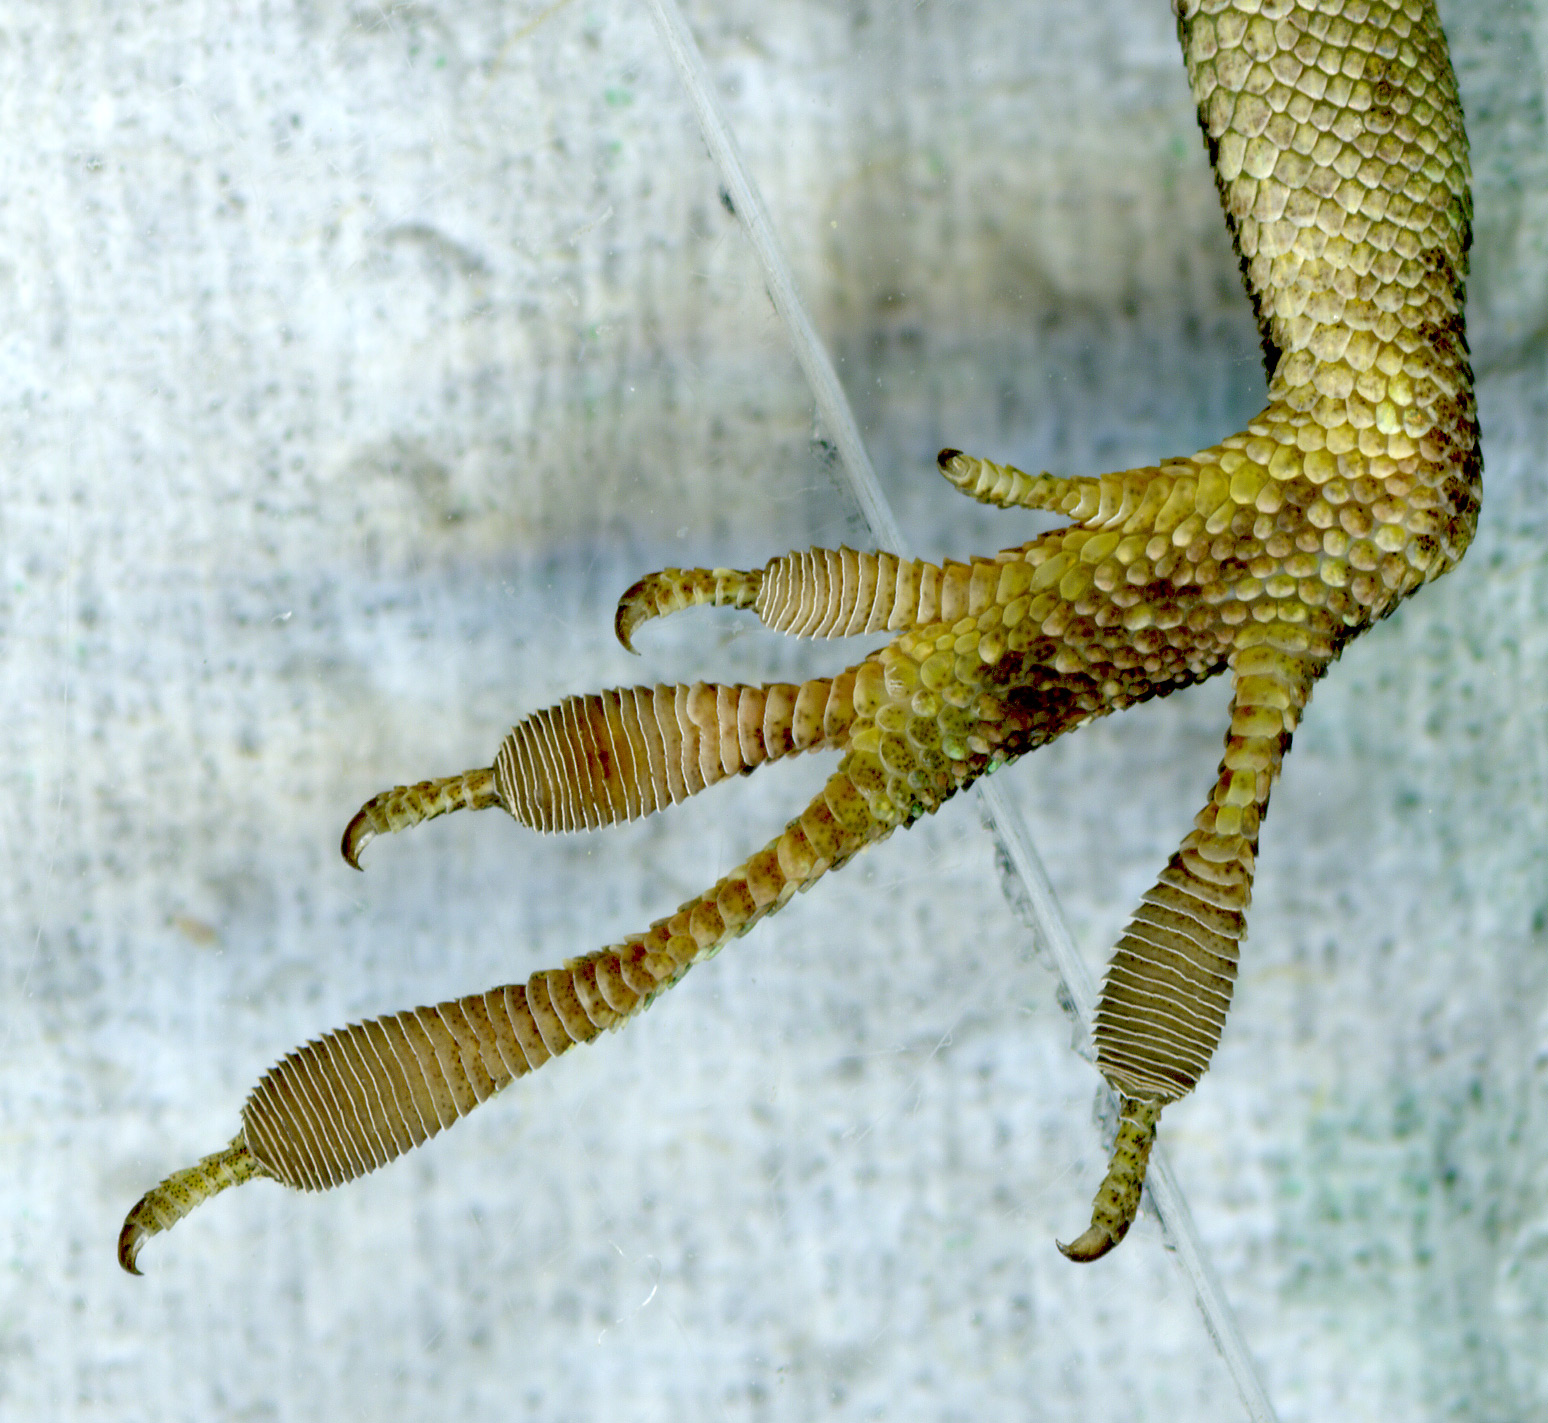 A lizard's foot